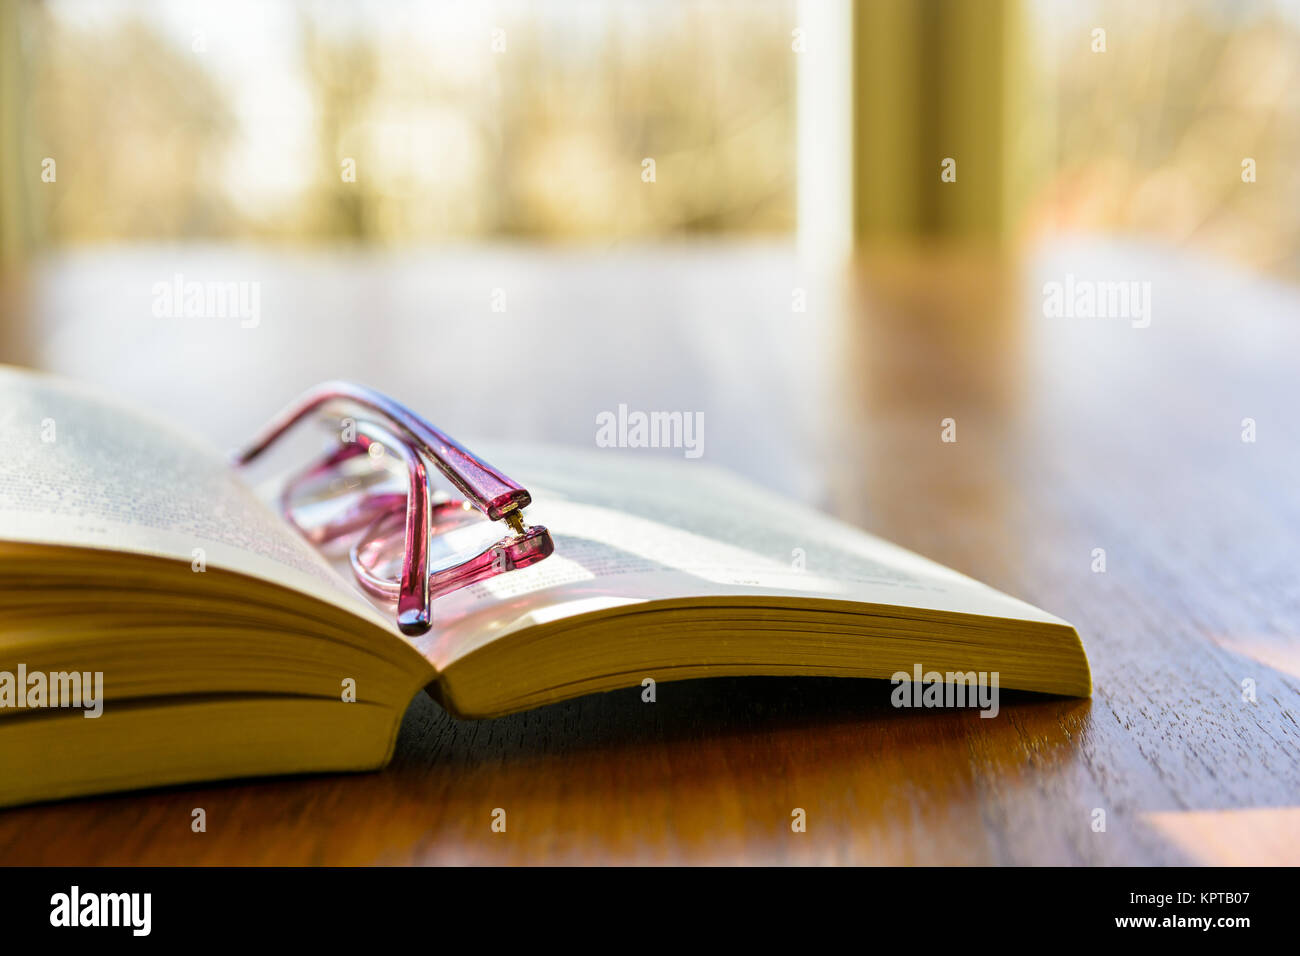 Vue rapprochée d'un livre de poche avec une paire de lunettes de lecture sur elle, posant à plat sur une table en bois devant une fenêtre. Banque D'Images